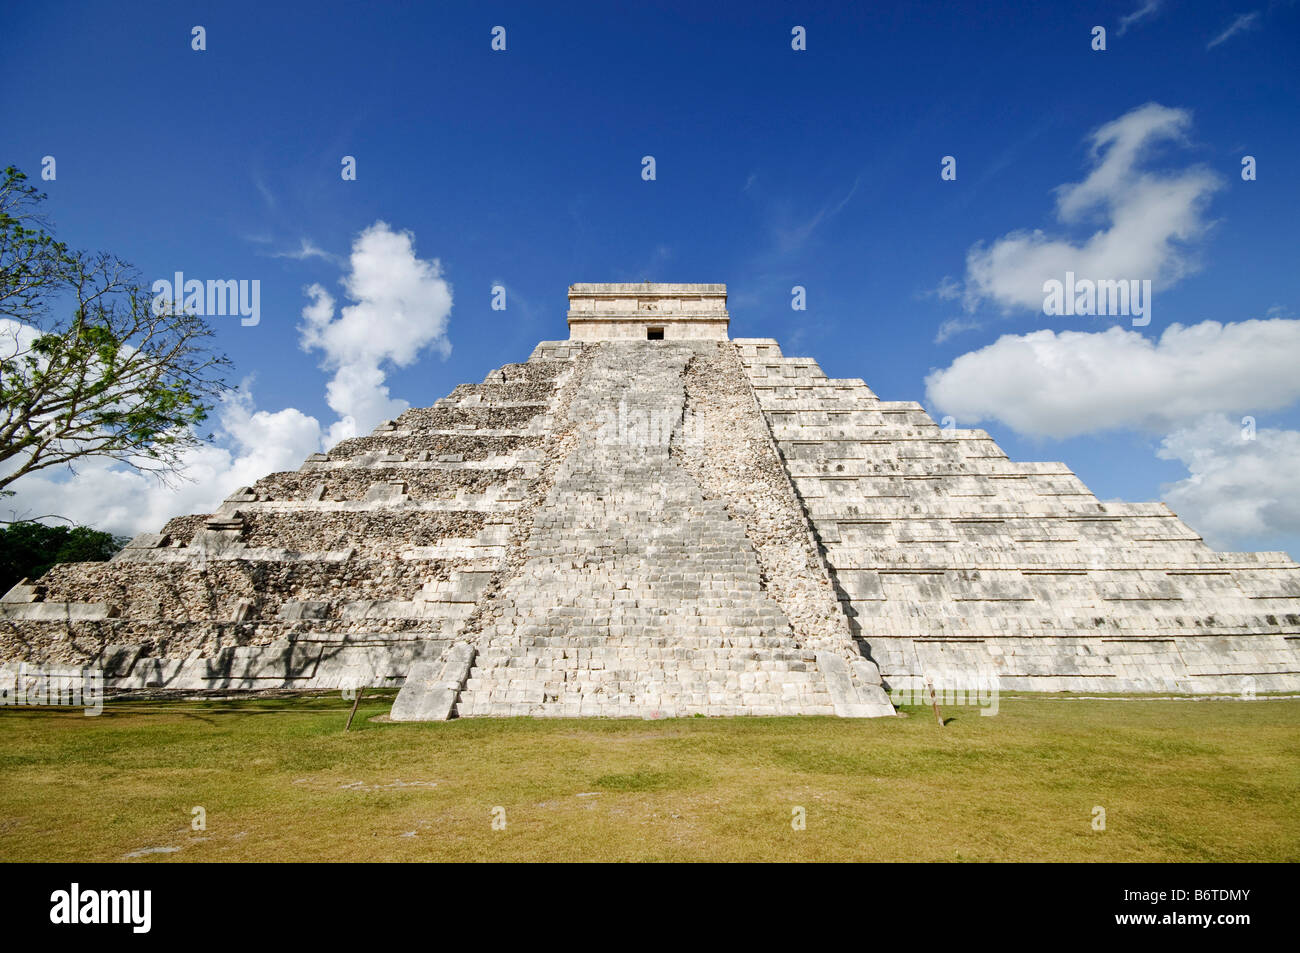 CHICHEN ITZA, Mexique - El Castillo (également connu sous le nom de Temple de Kuklcan) aux ruines mayas anciennes de Chichen Itza, Yucatan, Mexique 081216103340 4546.NEF. Chichen Itza, situé sur la péninsule du Yucatan au Mexique, est un site archéologique important présentant la riche histoire et les connaissances scientifiques avancées de la civilisation maya antique. Il est plus connu pour la Pyramide Kukulkan, ou « El Castillo », une structure à quatre côtés avec 91 marches de chaque côté, culminant en une seule étape au sommet pour représenter les 365 jours de l'année solaire. Banque D'Images